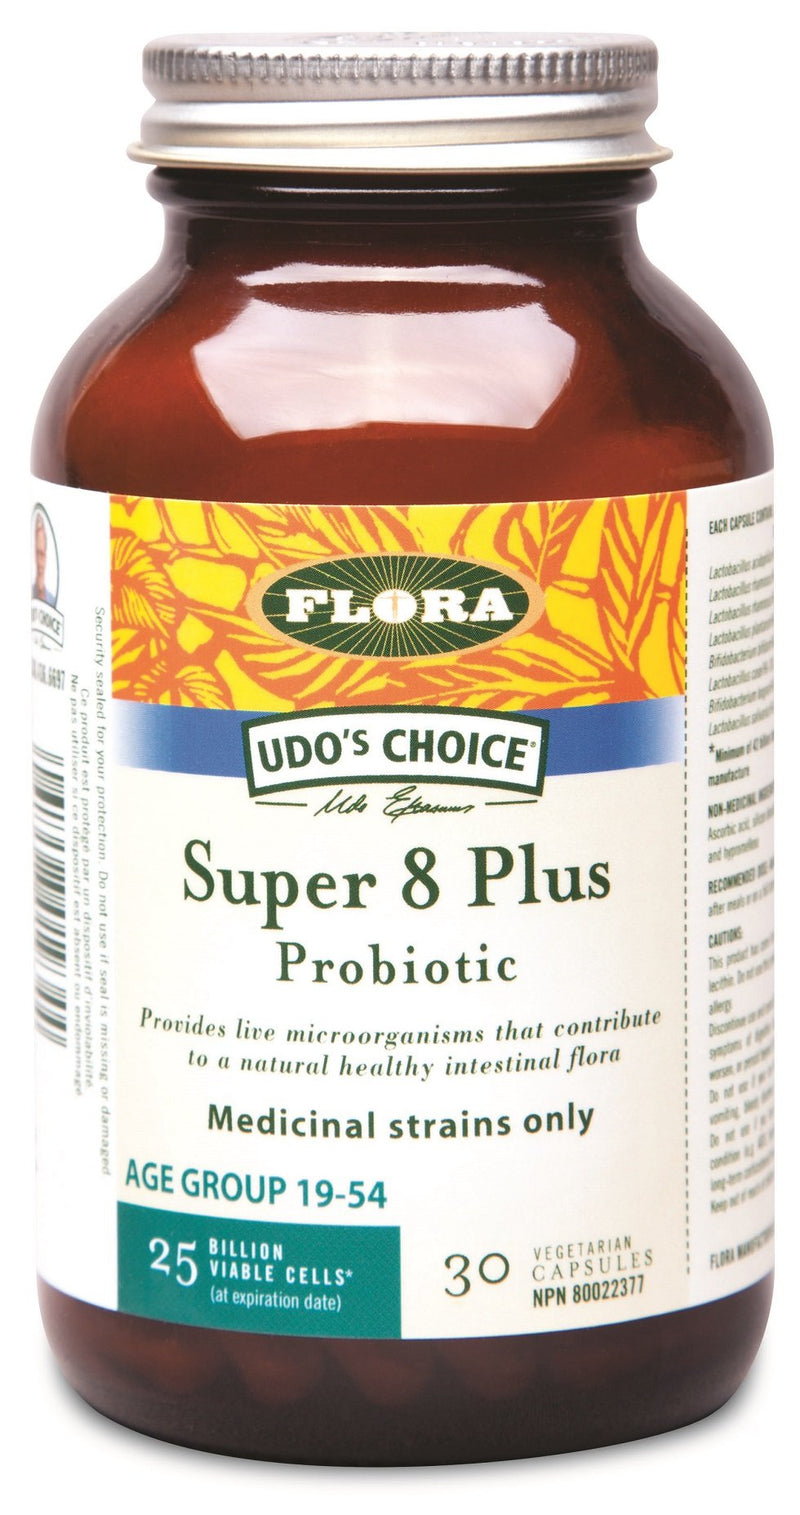 Flora Super 8 Plus Probiotic 25 Billion Viable Cells VCaps Image 2